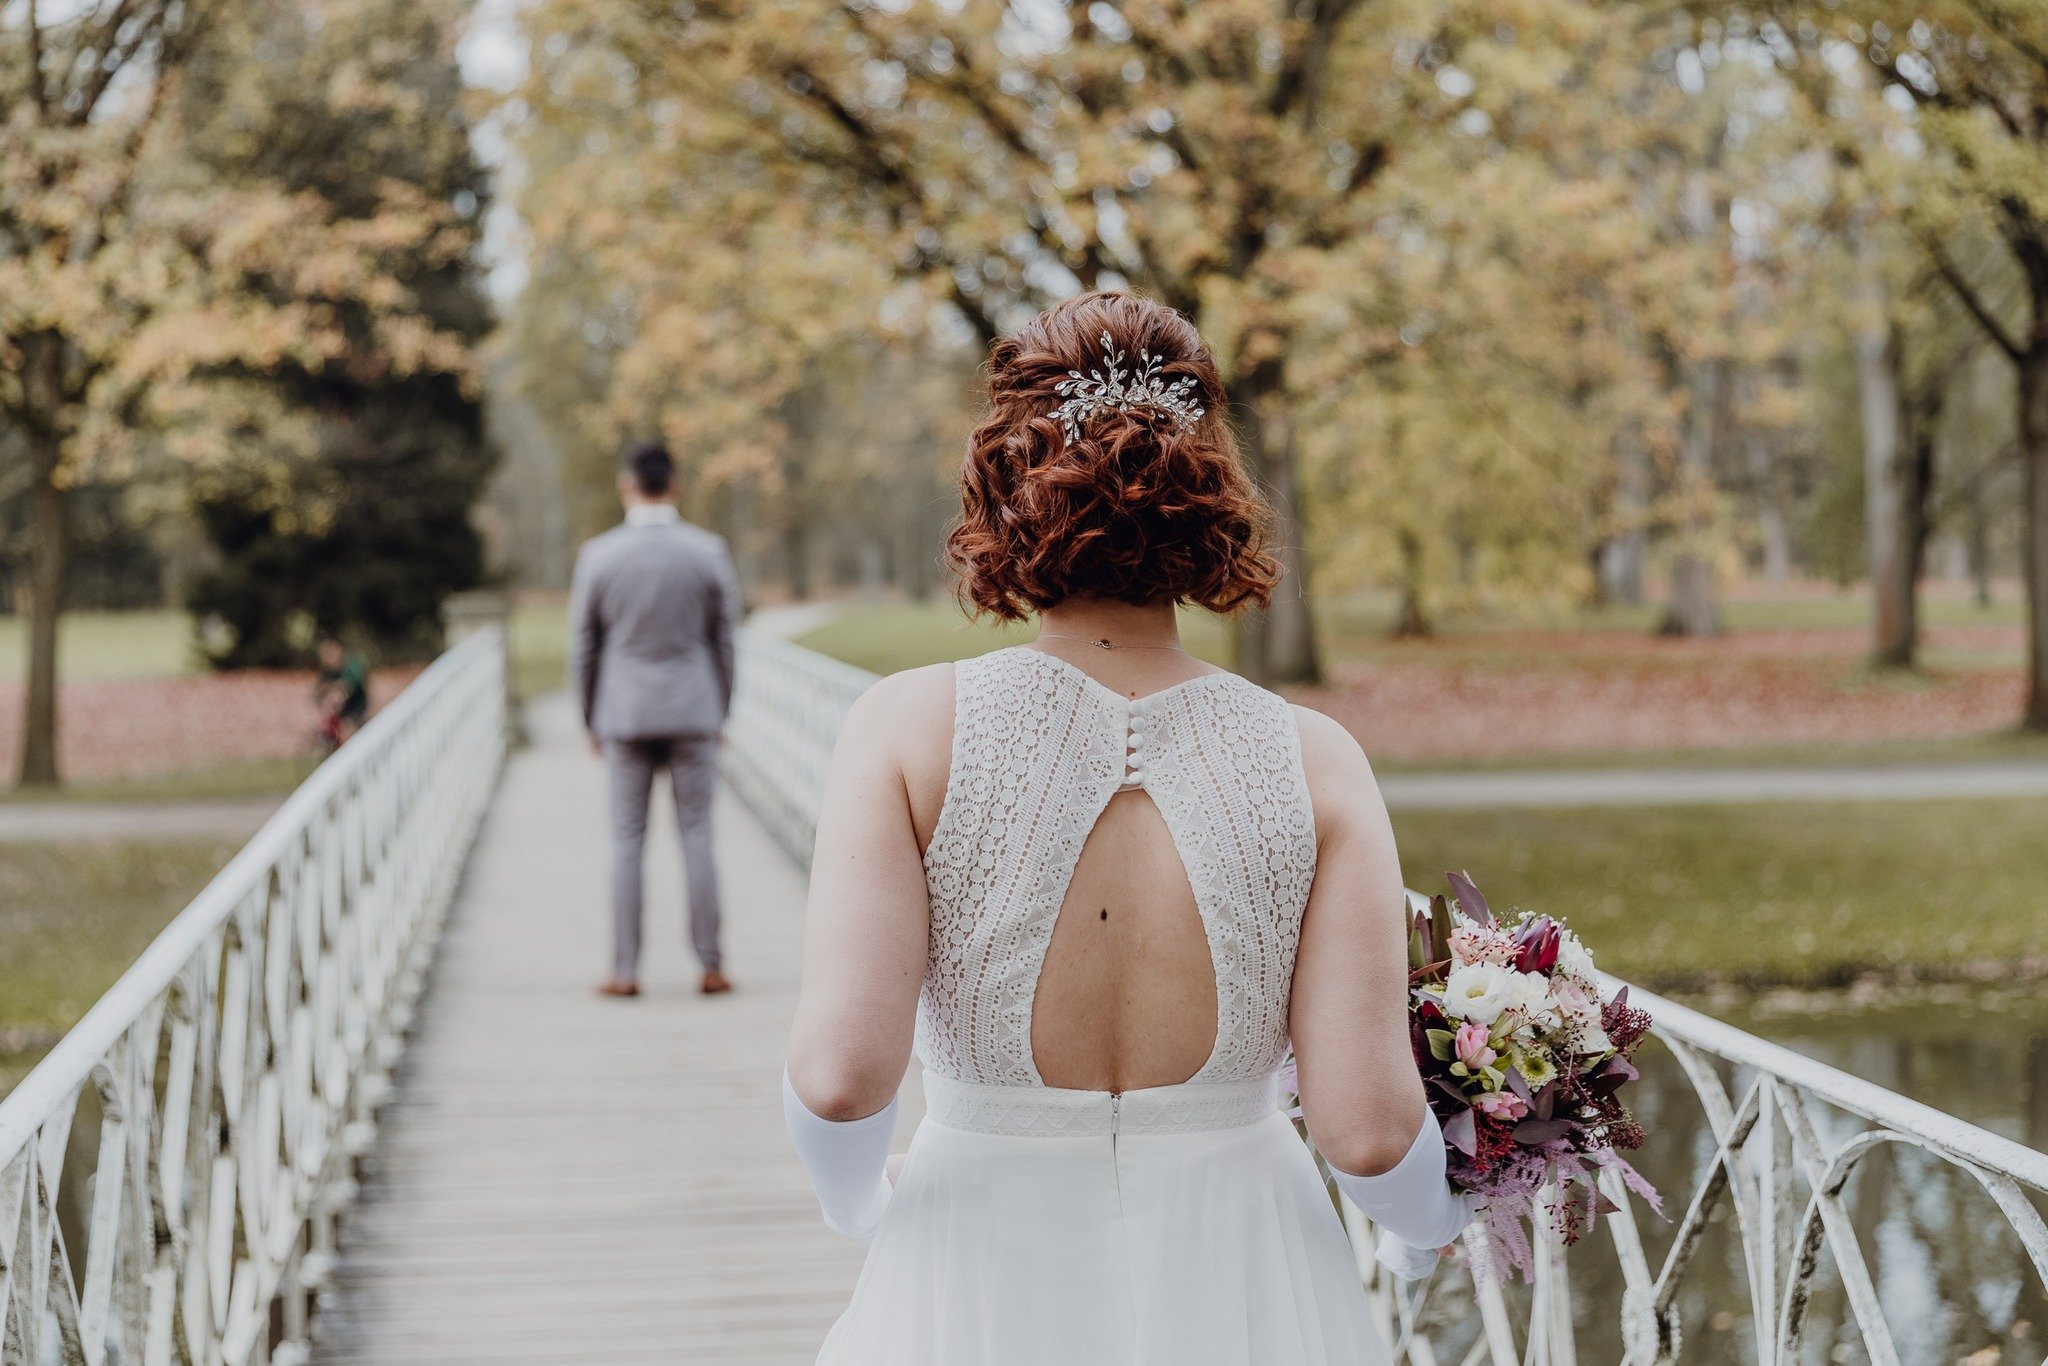 First Look. 💫

Der magische Moment des ersten Aufeinandertreffens 🥰

.
.
.

#wedding #outdoorshooting #hochzeit2024 #hochzeitsfotografkassel #anneguenst